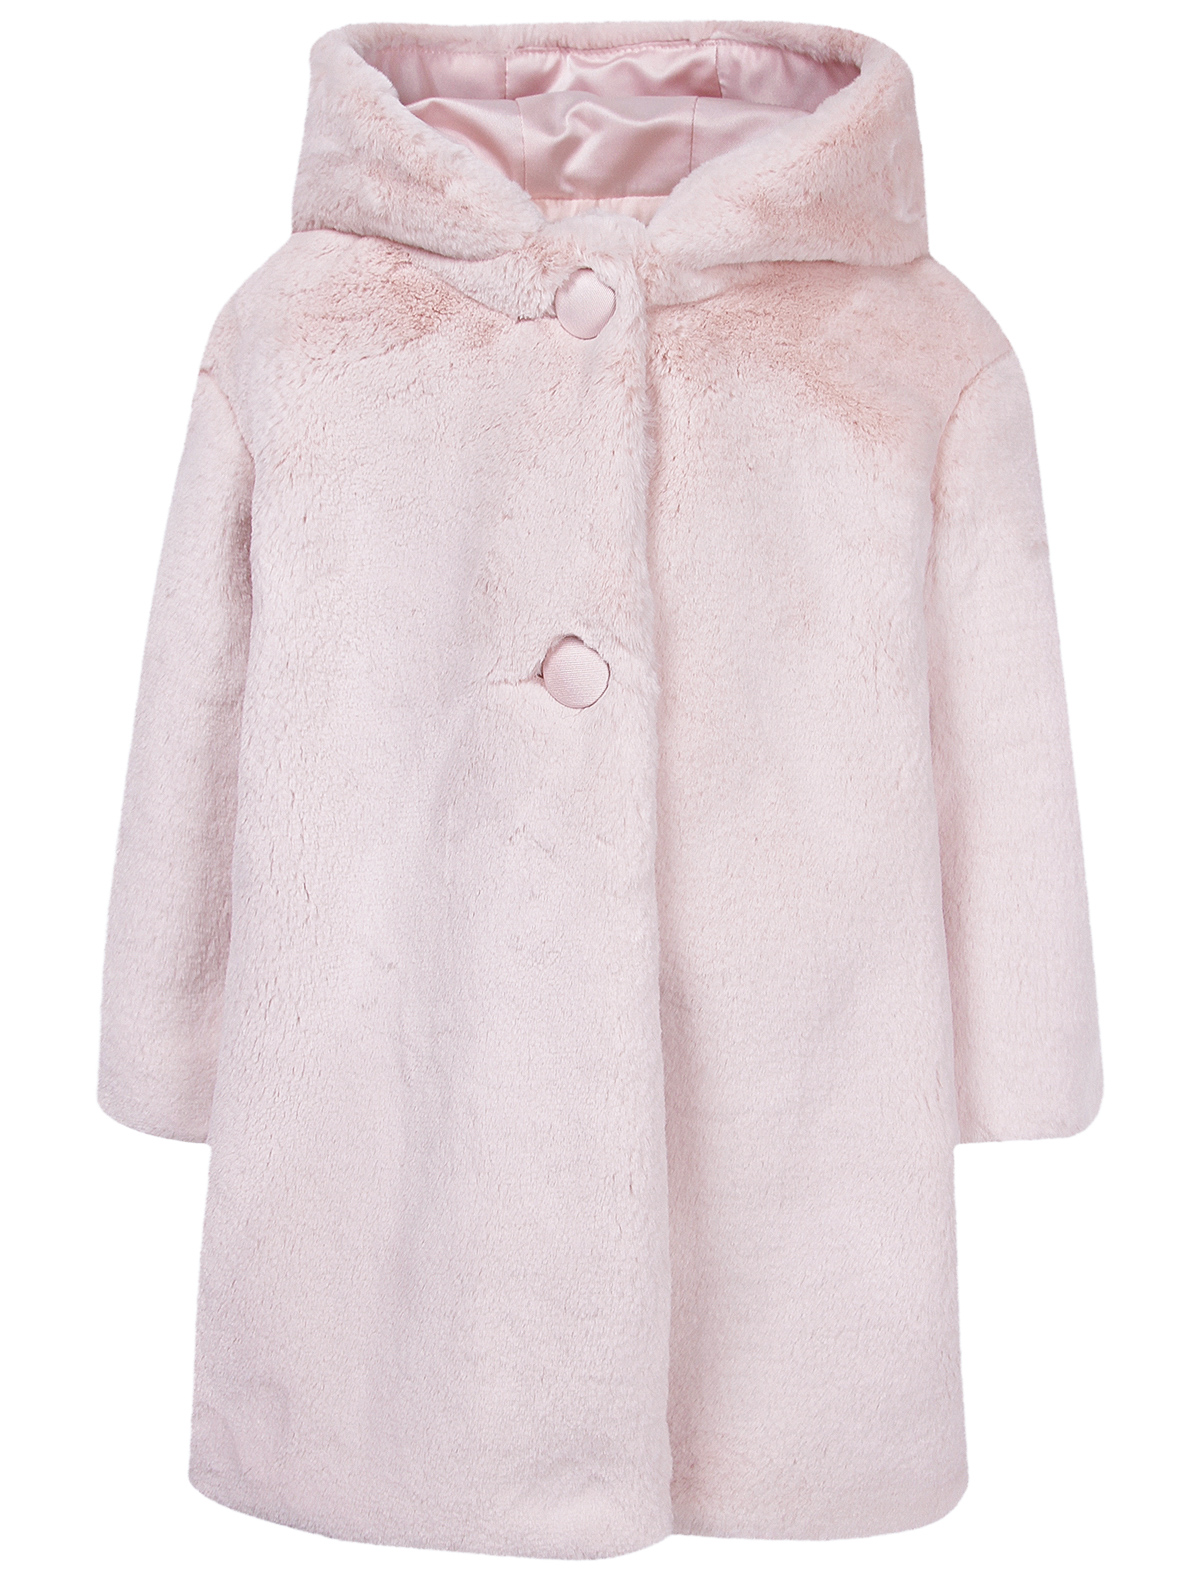 Пальто меховое Colorichiari 2045175, цвет розовый, размер 6 4122609980036 - фото 1